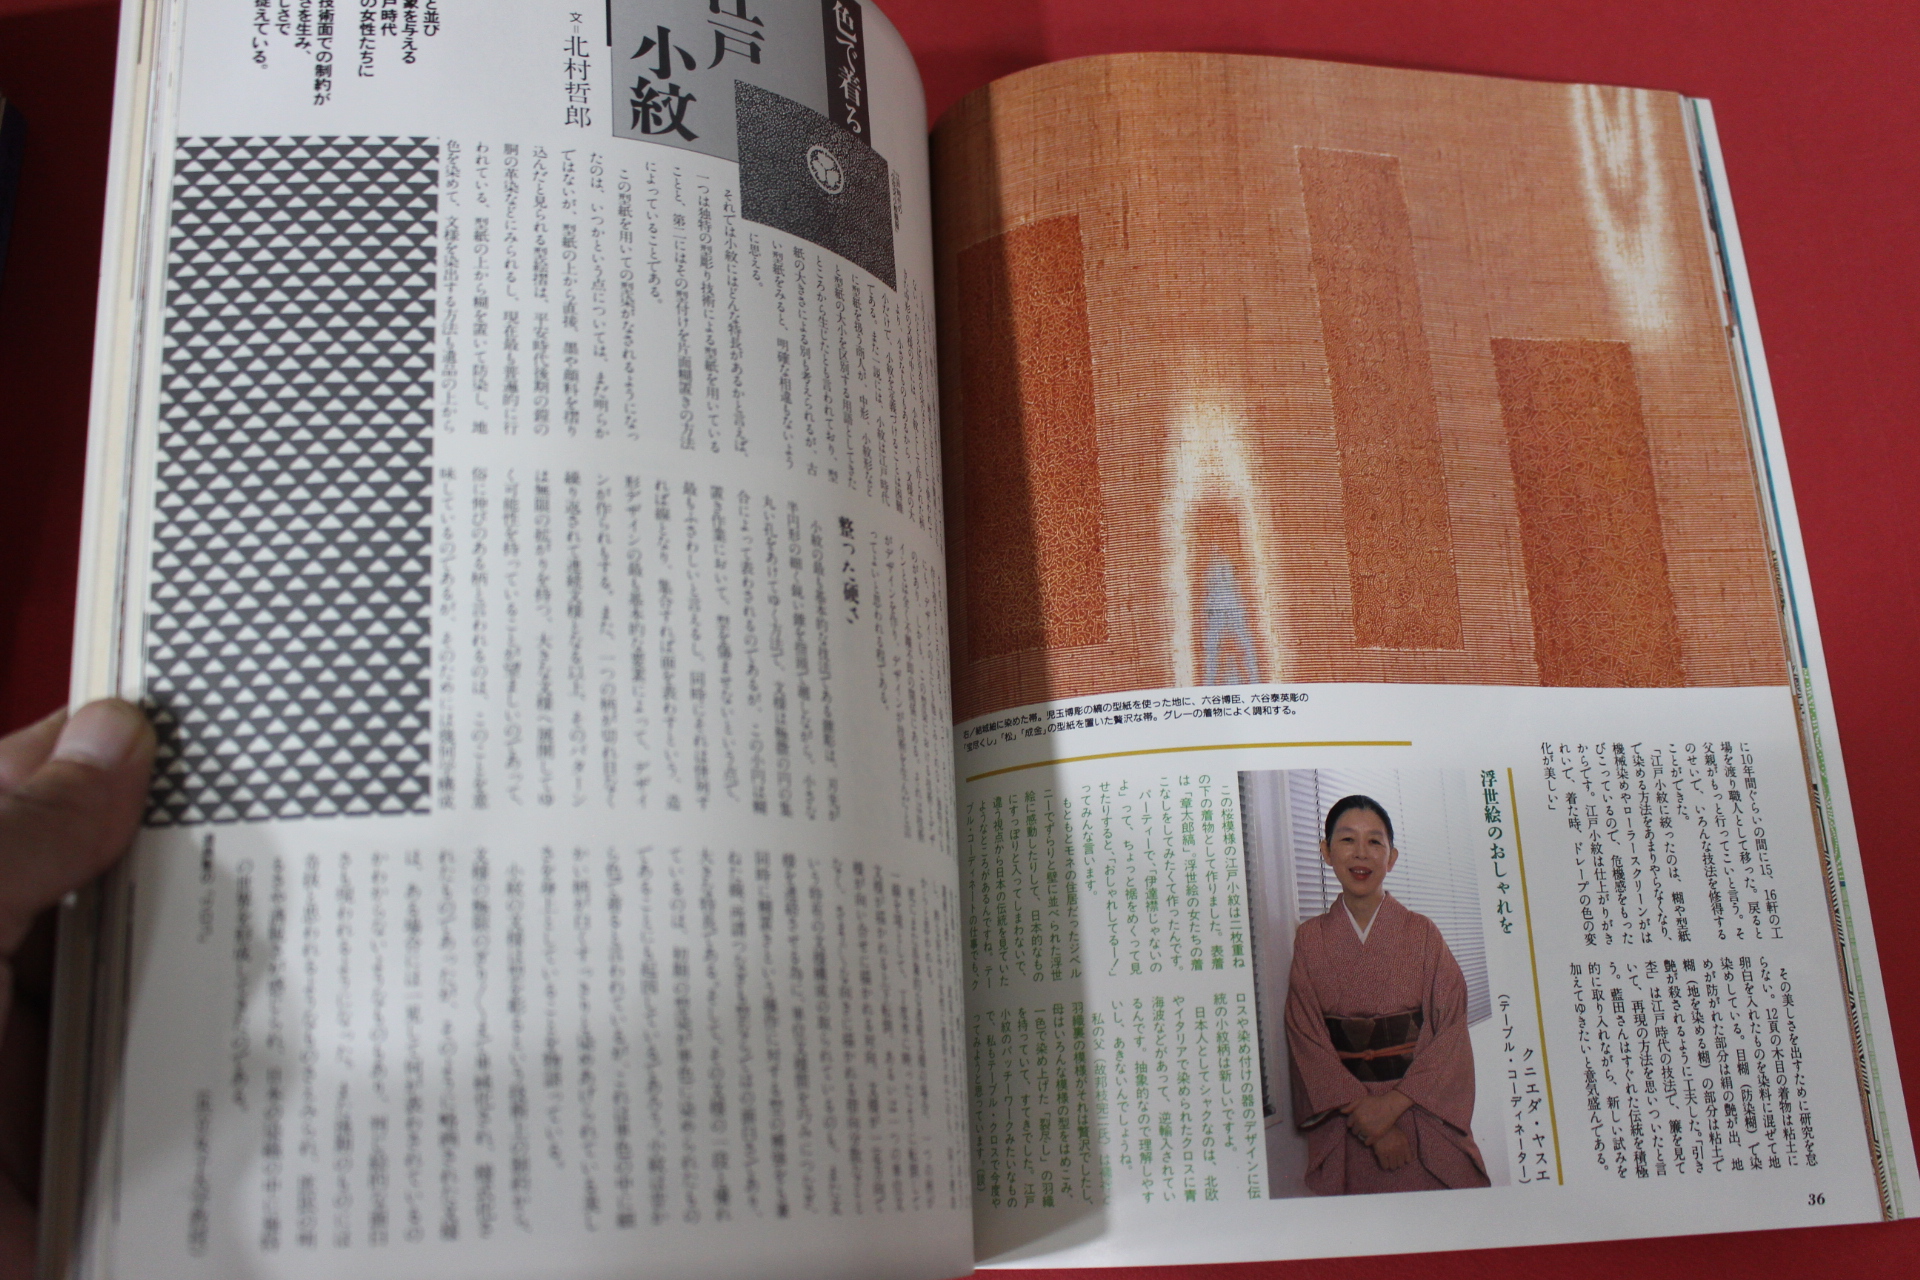 1988년(소화63년) 일본잡지